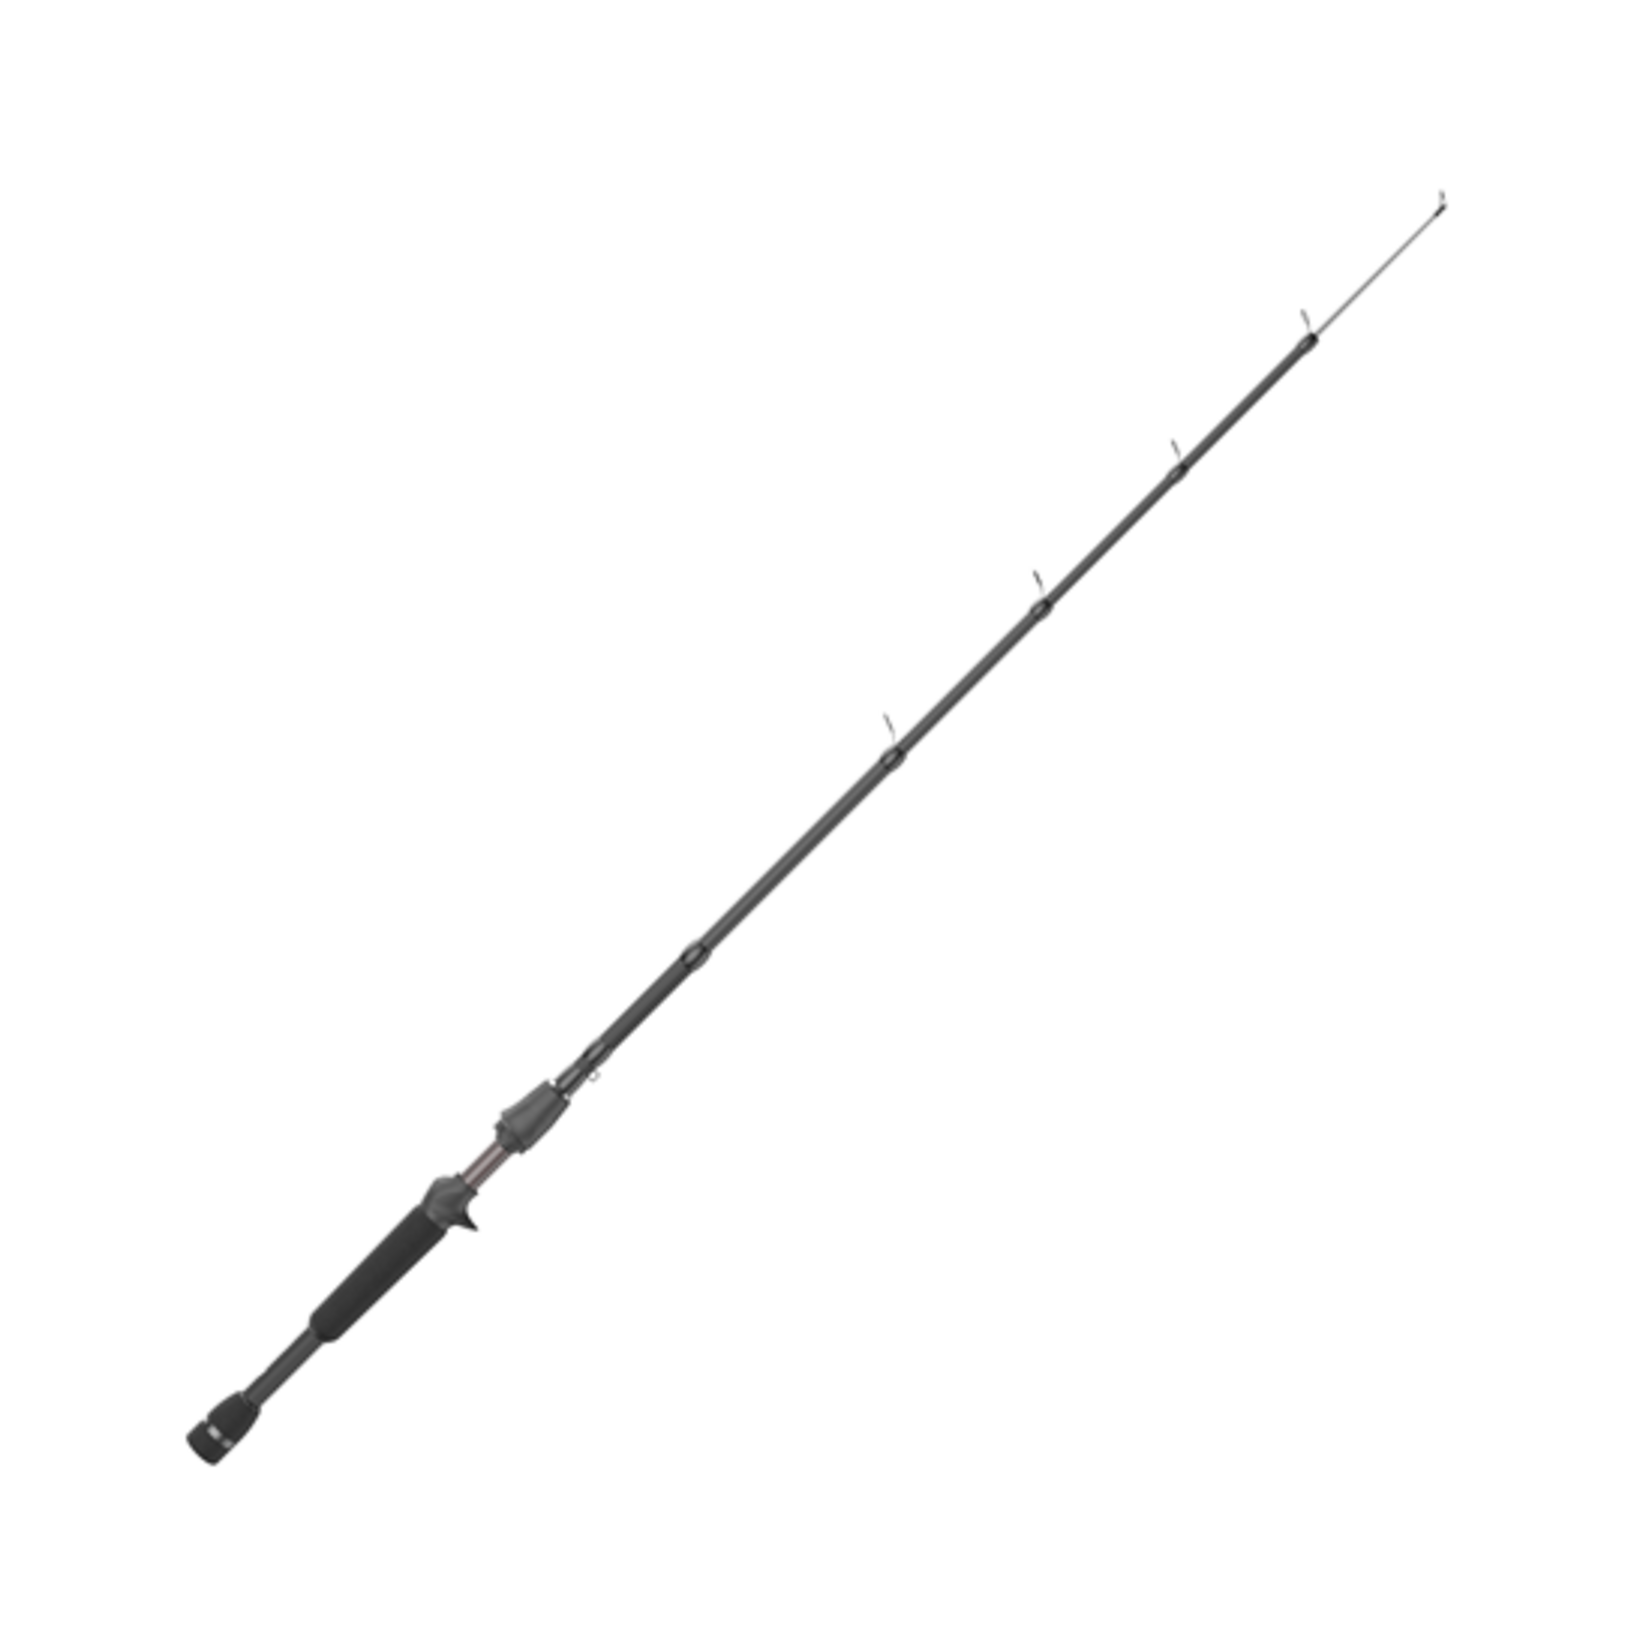 QUANTUM Quantum Embark Tele 6'6" 5-Section Medium-Heavy Casting Rod